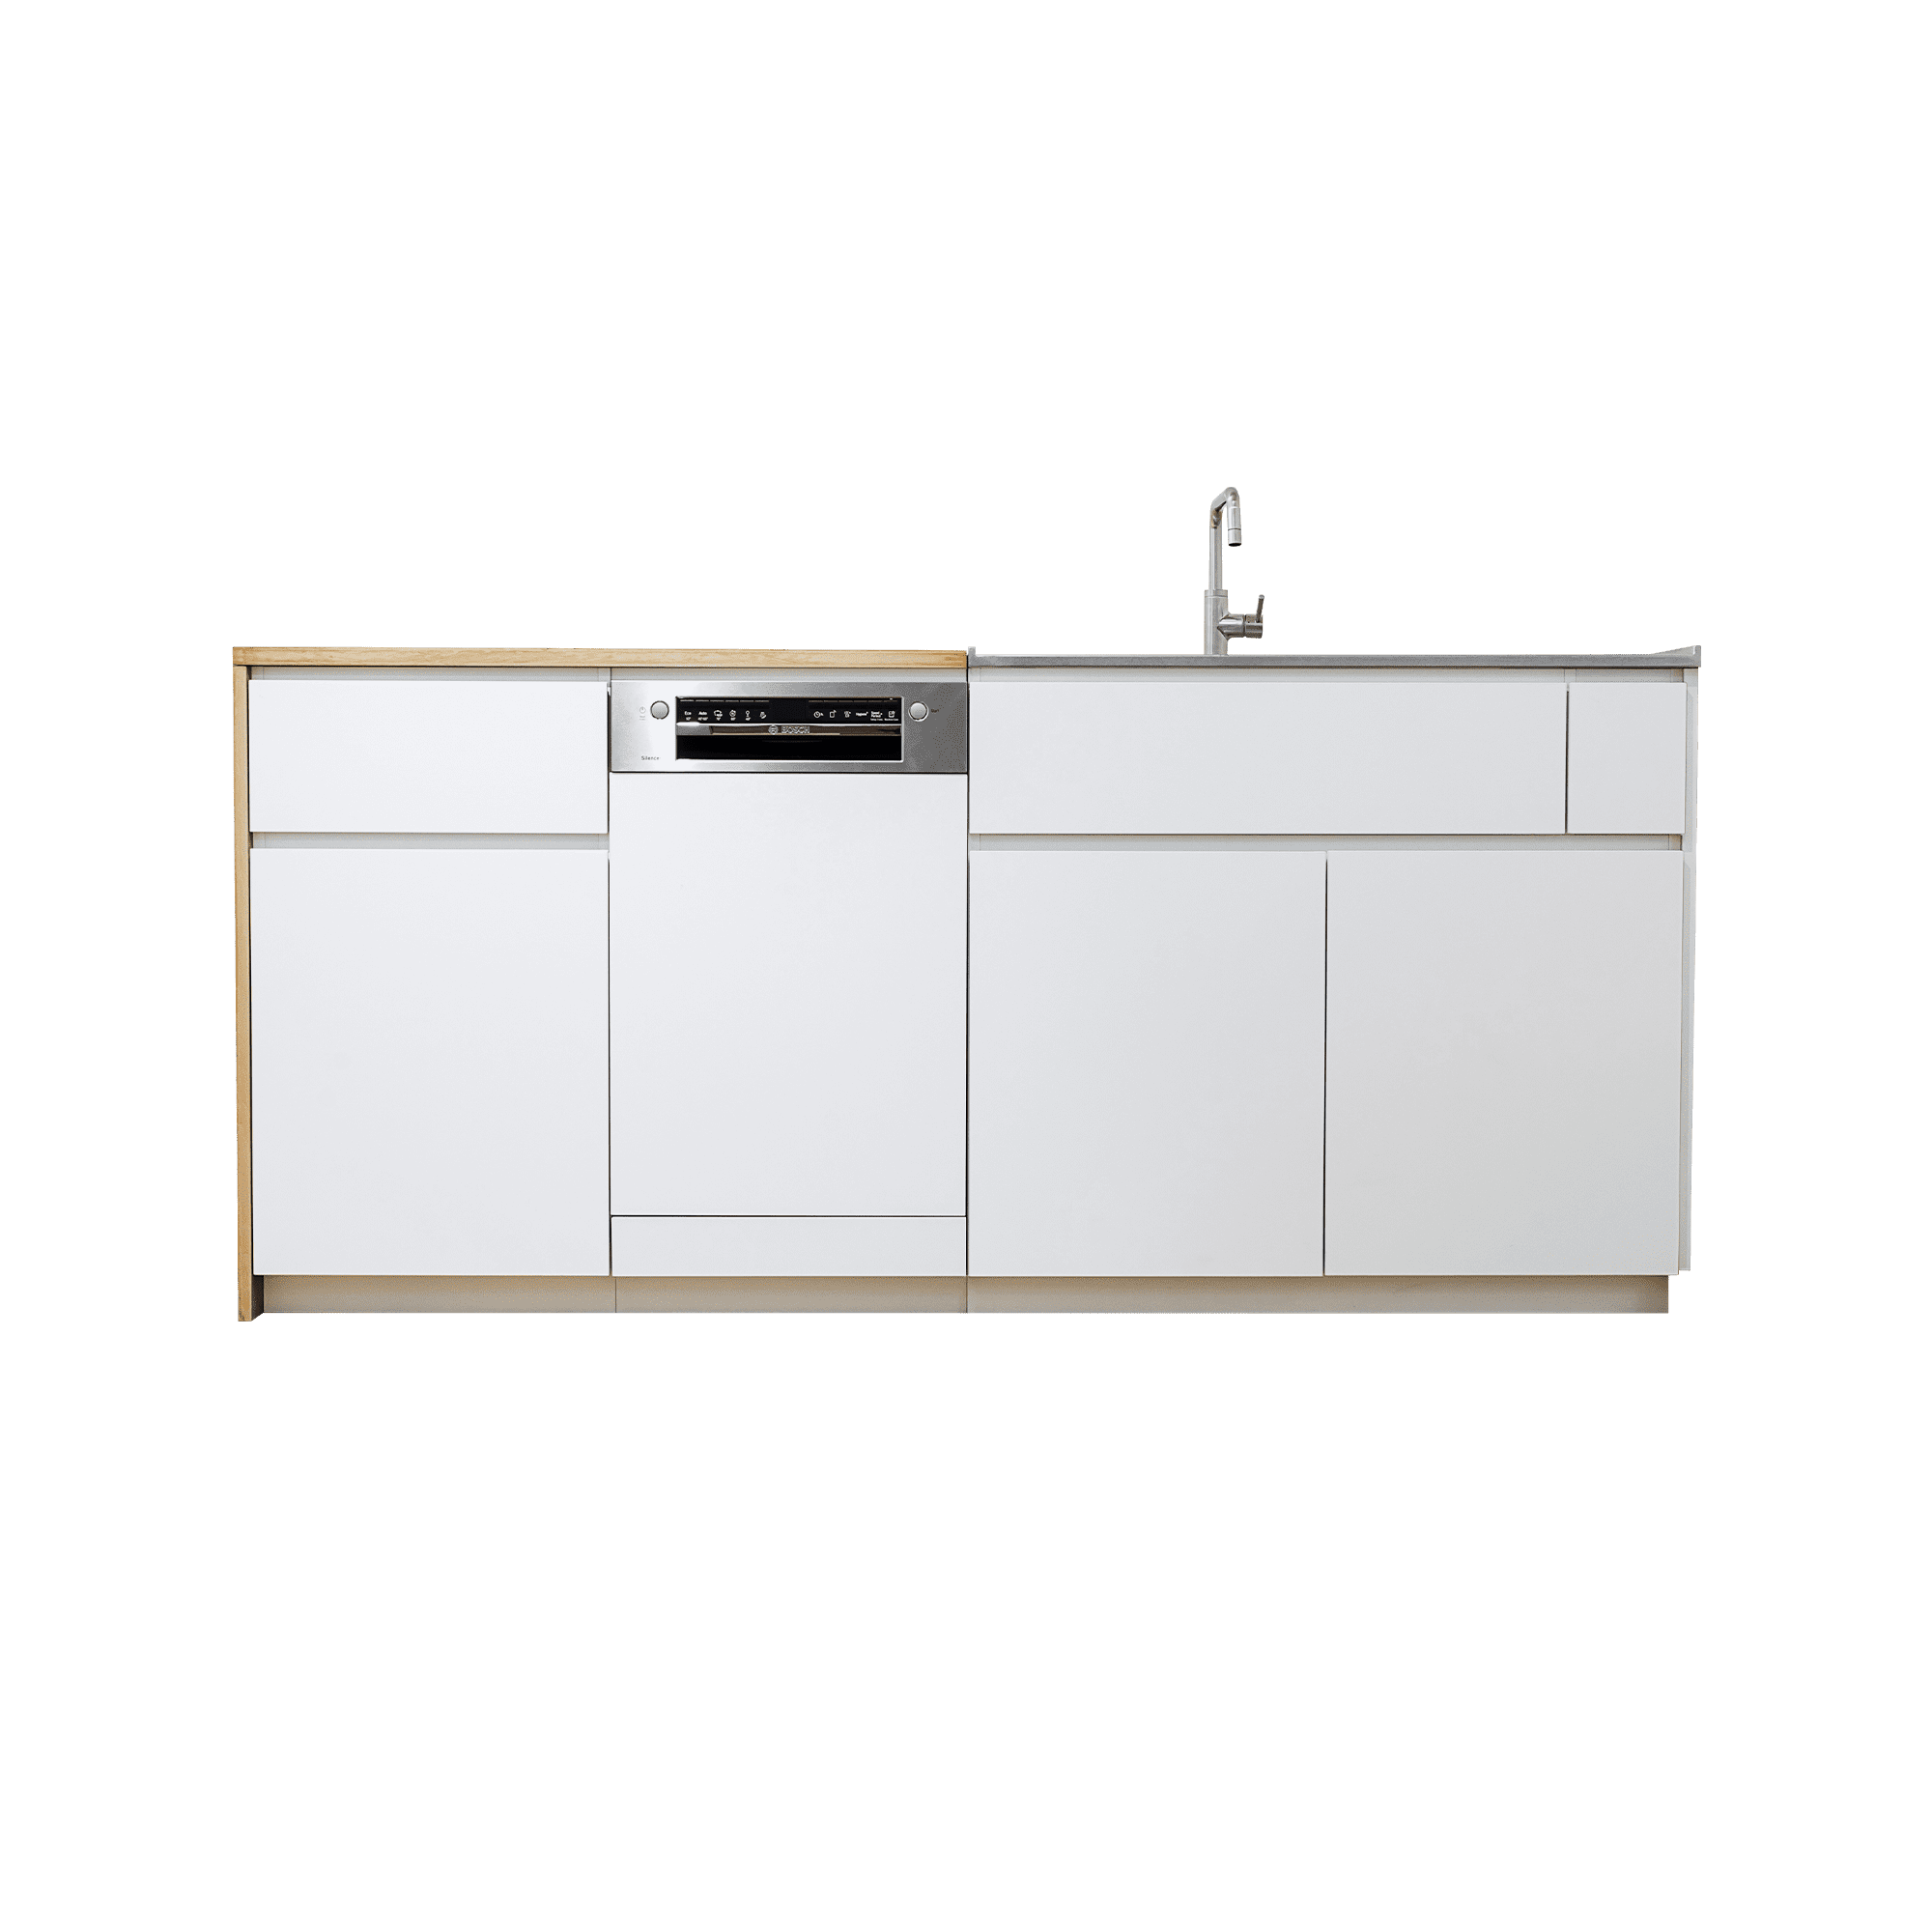 木天板キッチンⅡ型 対面シンク側 フロントオープン食洗機 W450タイプ